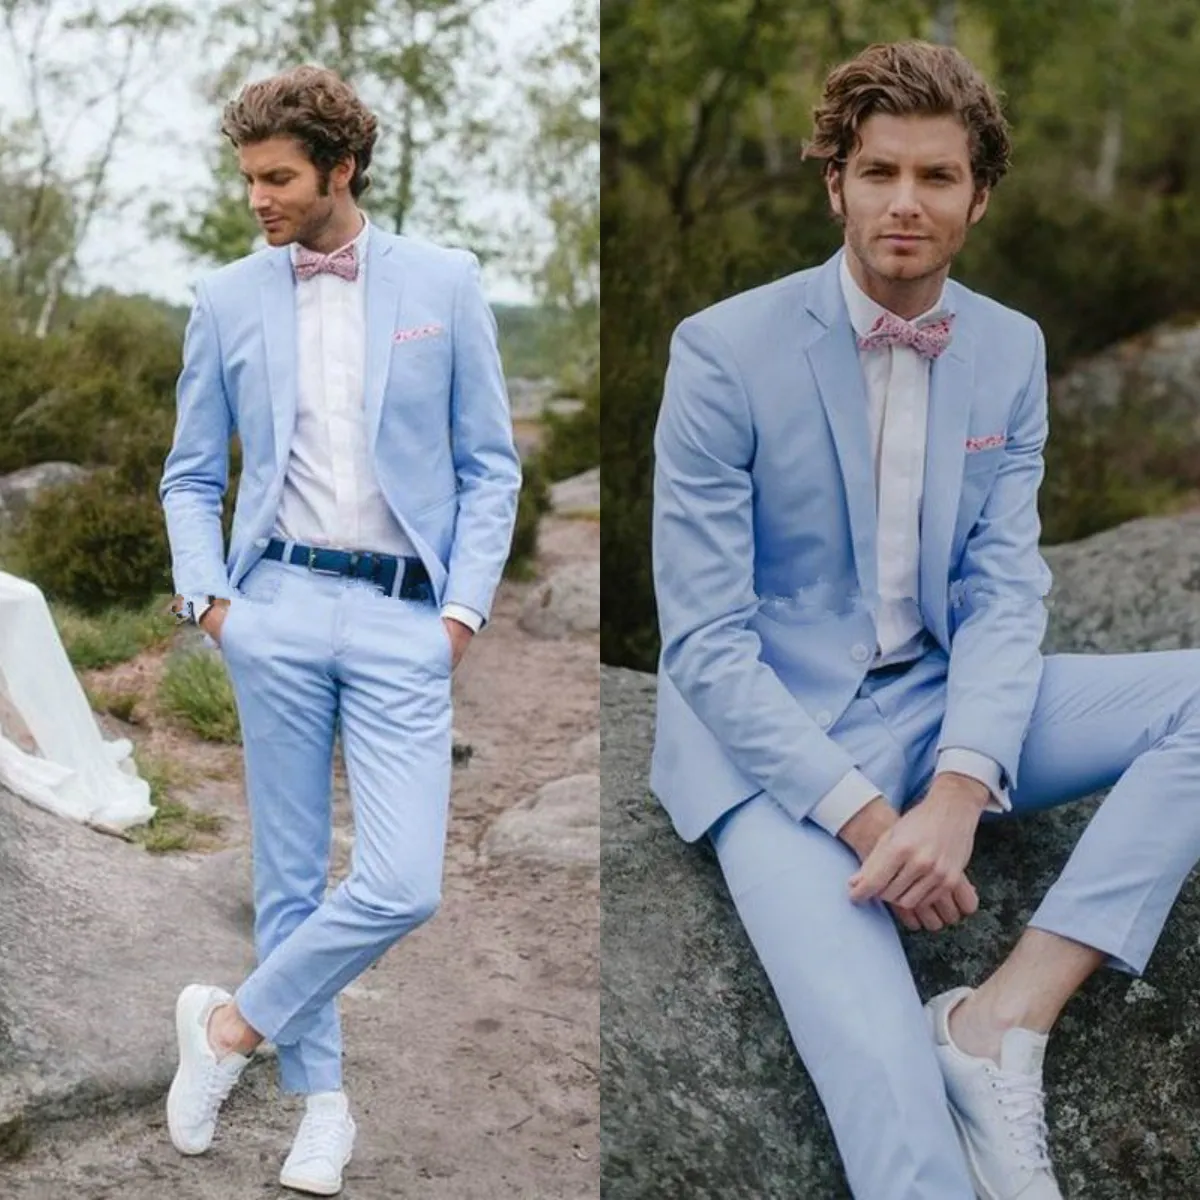 Ternos masculinos azul-celeste claros para casamento country smokings masculinos ternos formais casuais para noivos jovens ternos de formatura (jaquetas + calças)